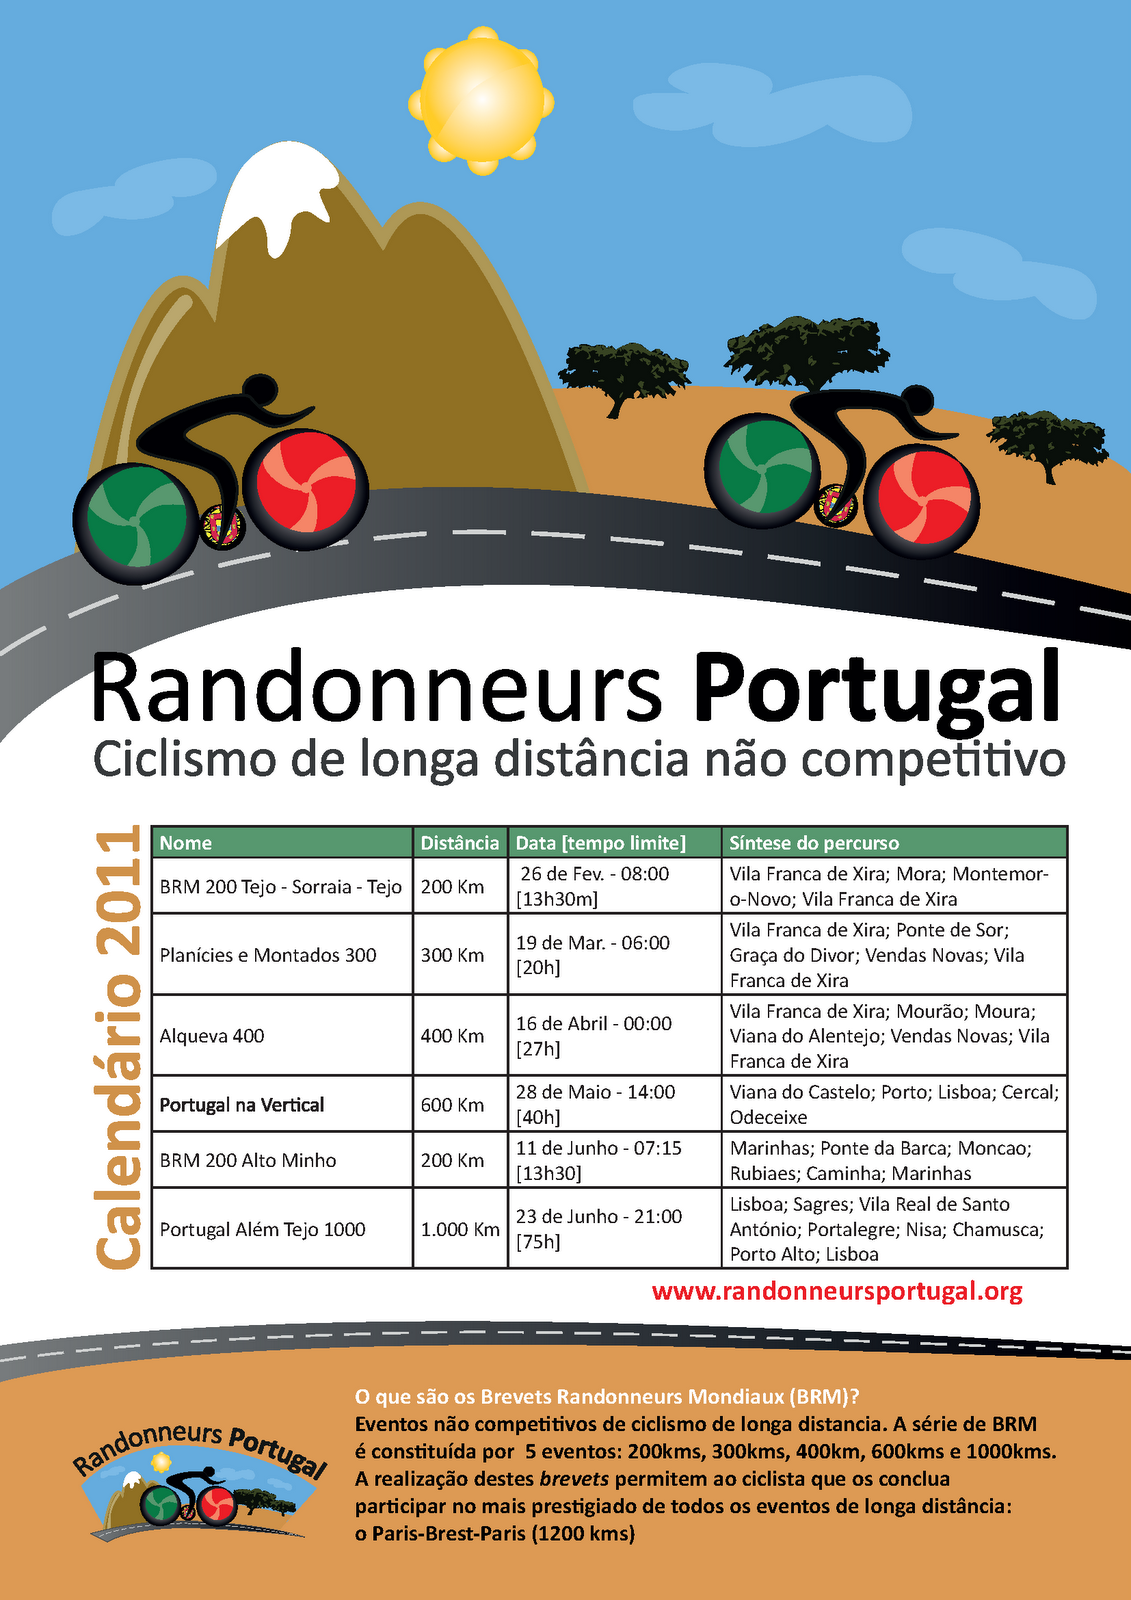 Brevets+Randonneurs+Mondiaux+-+Calend%C3%A1rio+Portugal+2011.png